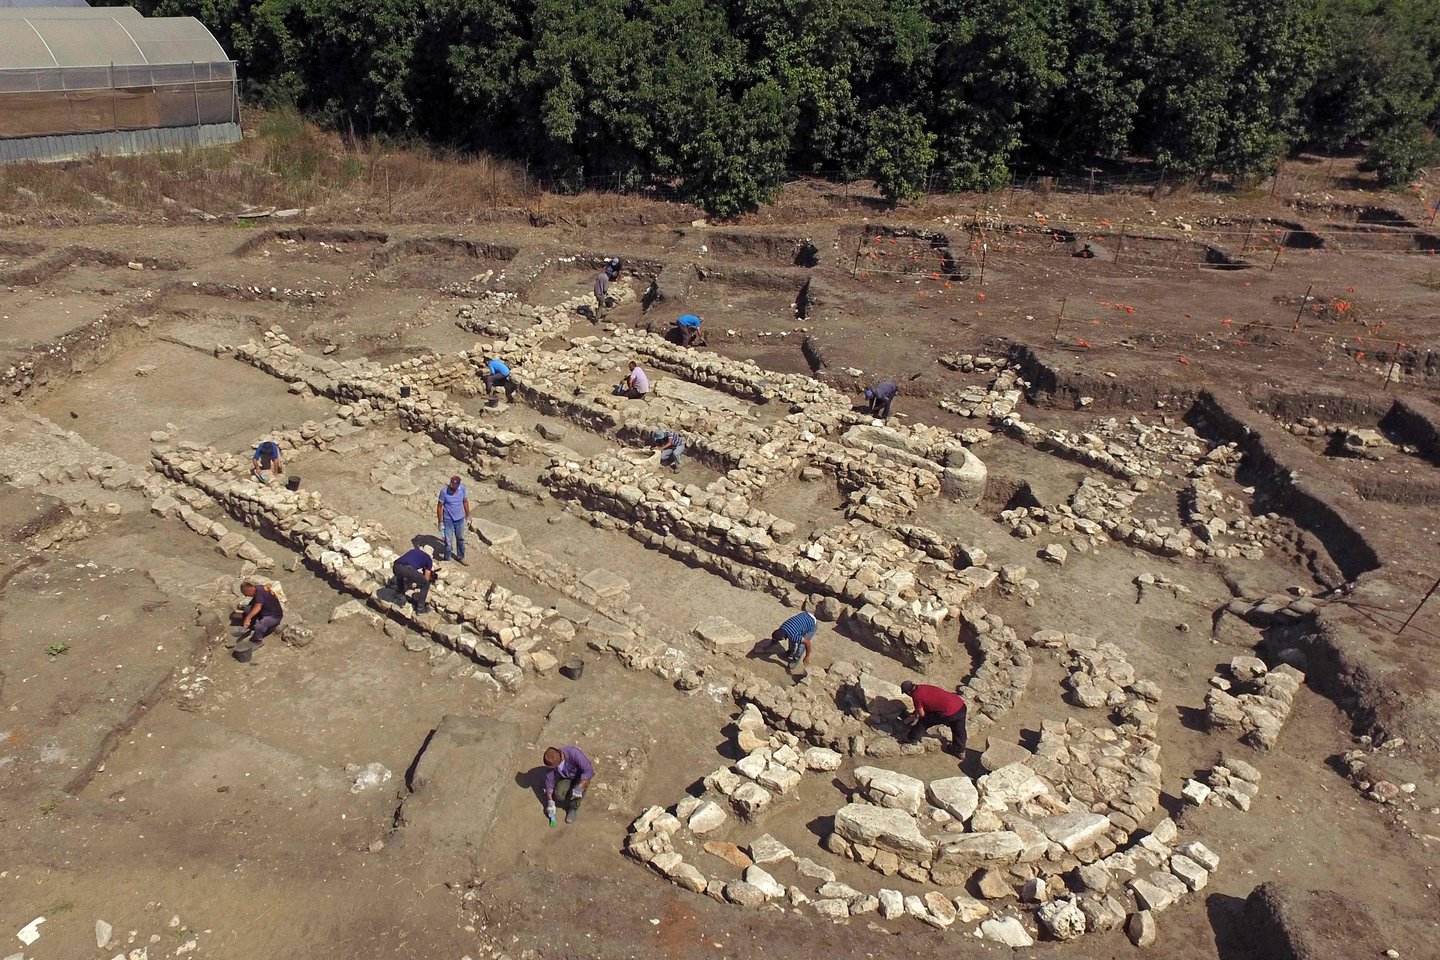  Atliekant kasinėjimus prieš kelio tiesimo darbus, Vidurio Izraelyje aptiktos 5 000 metų senumo miesto liekanos.<br> AFP / Scanpix nuotr.